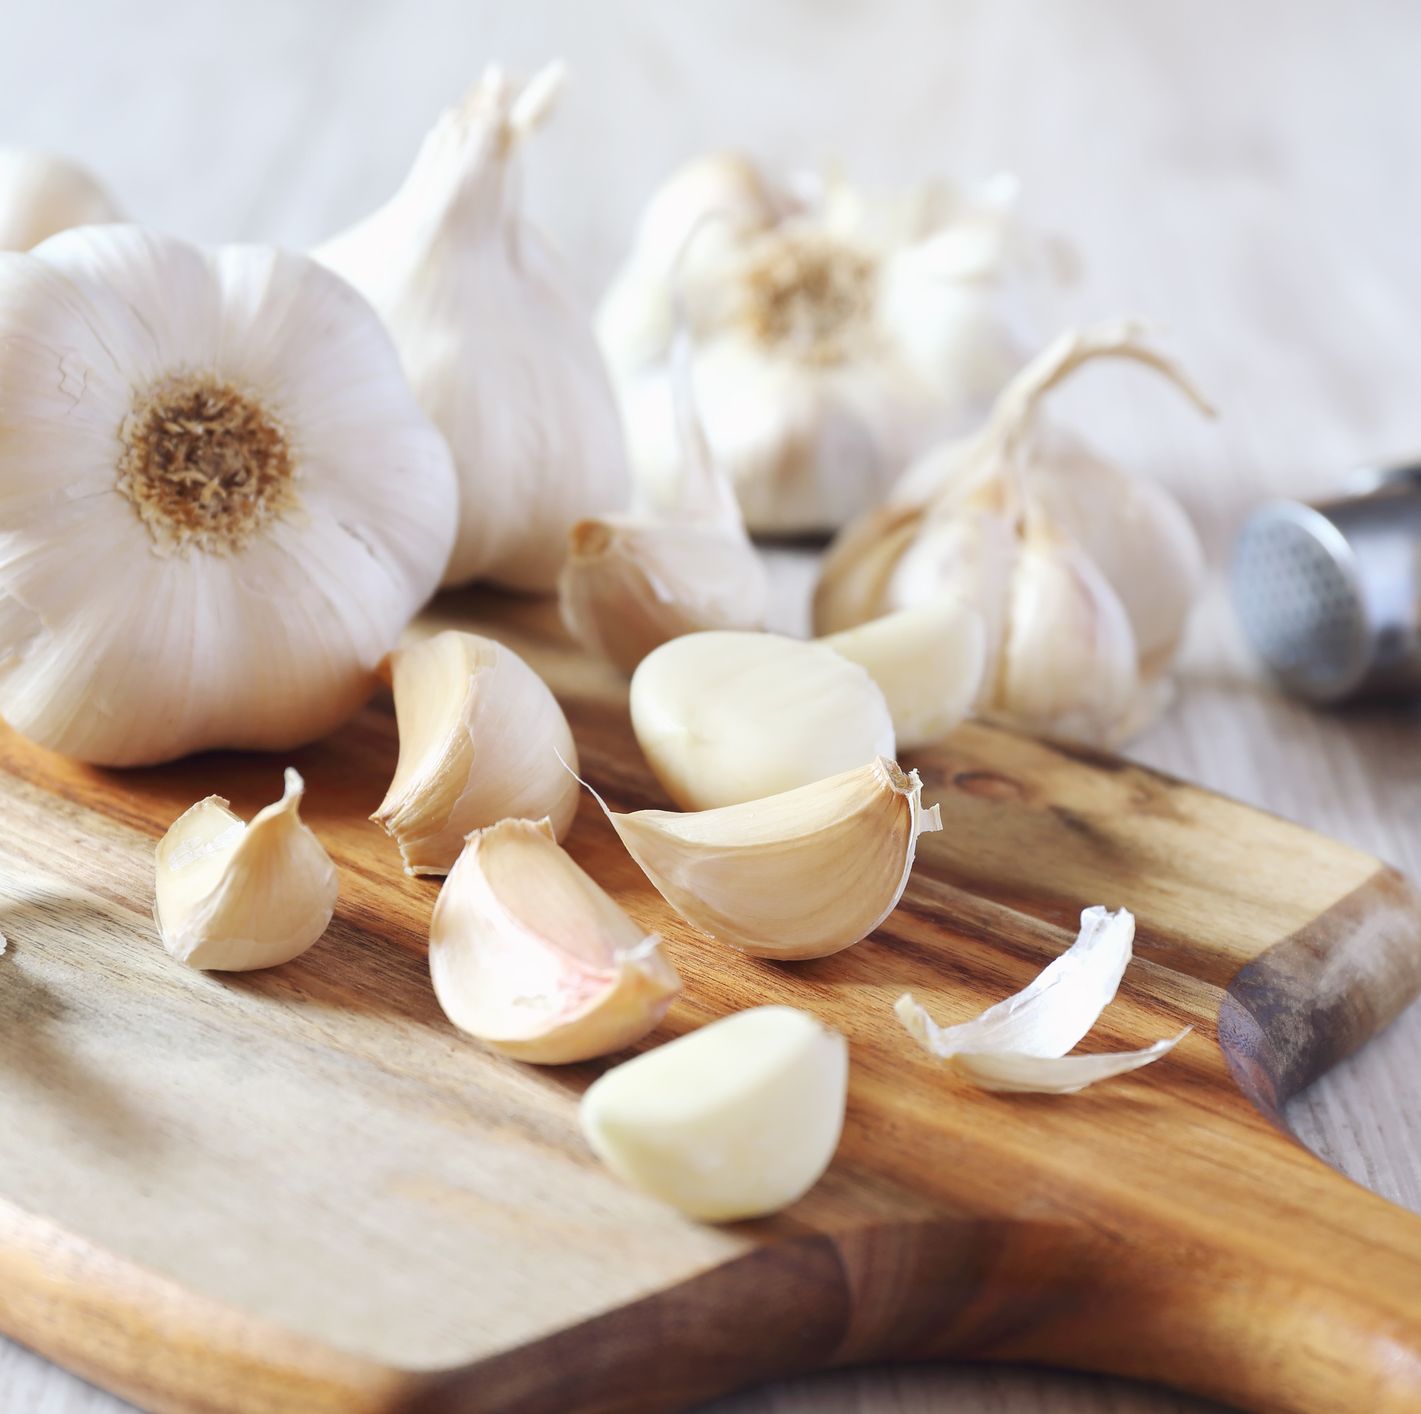 parts of garlic